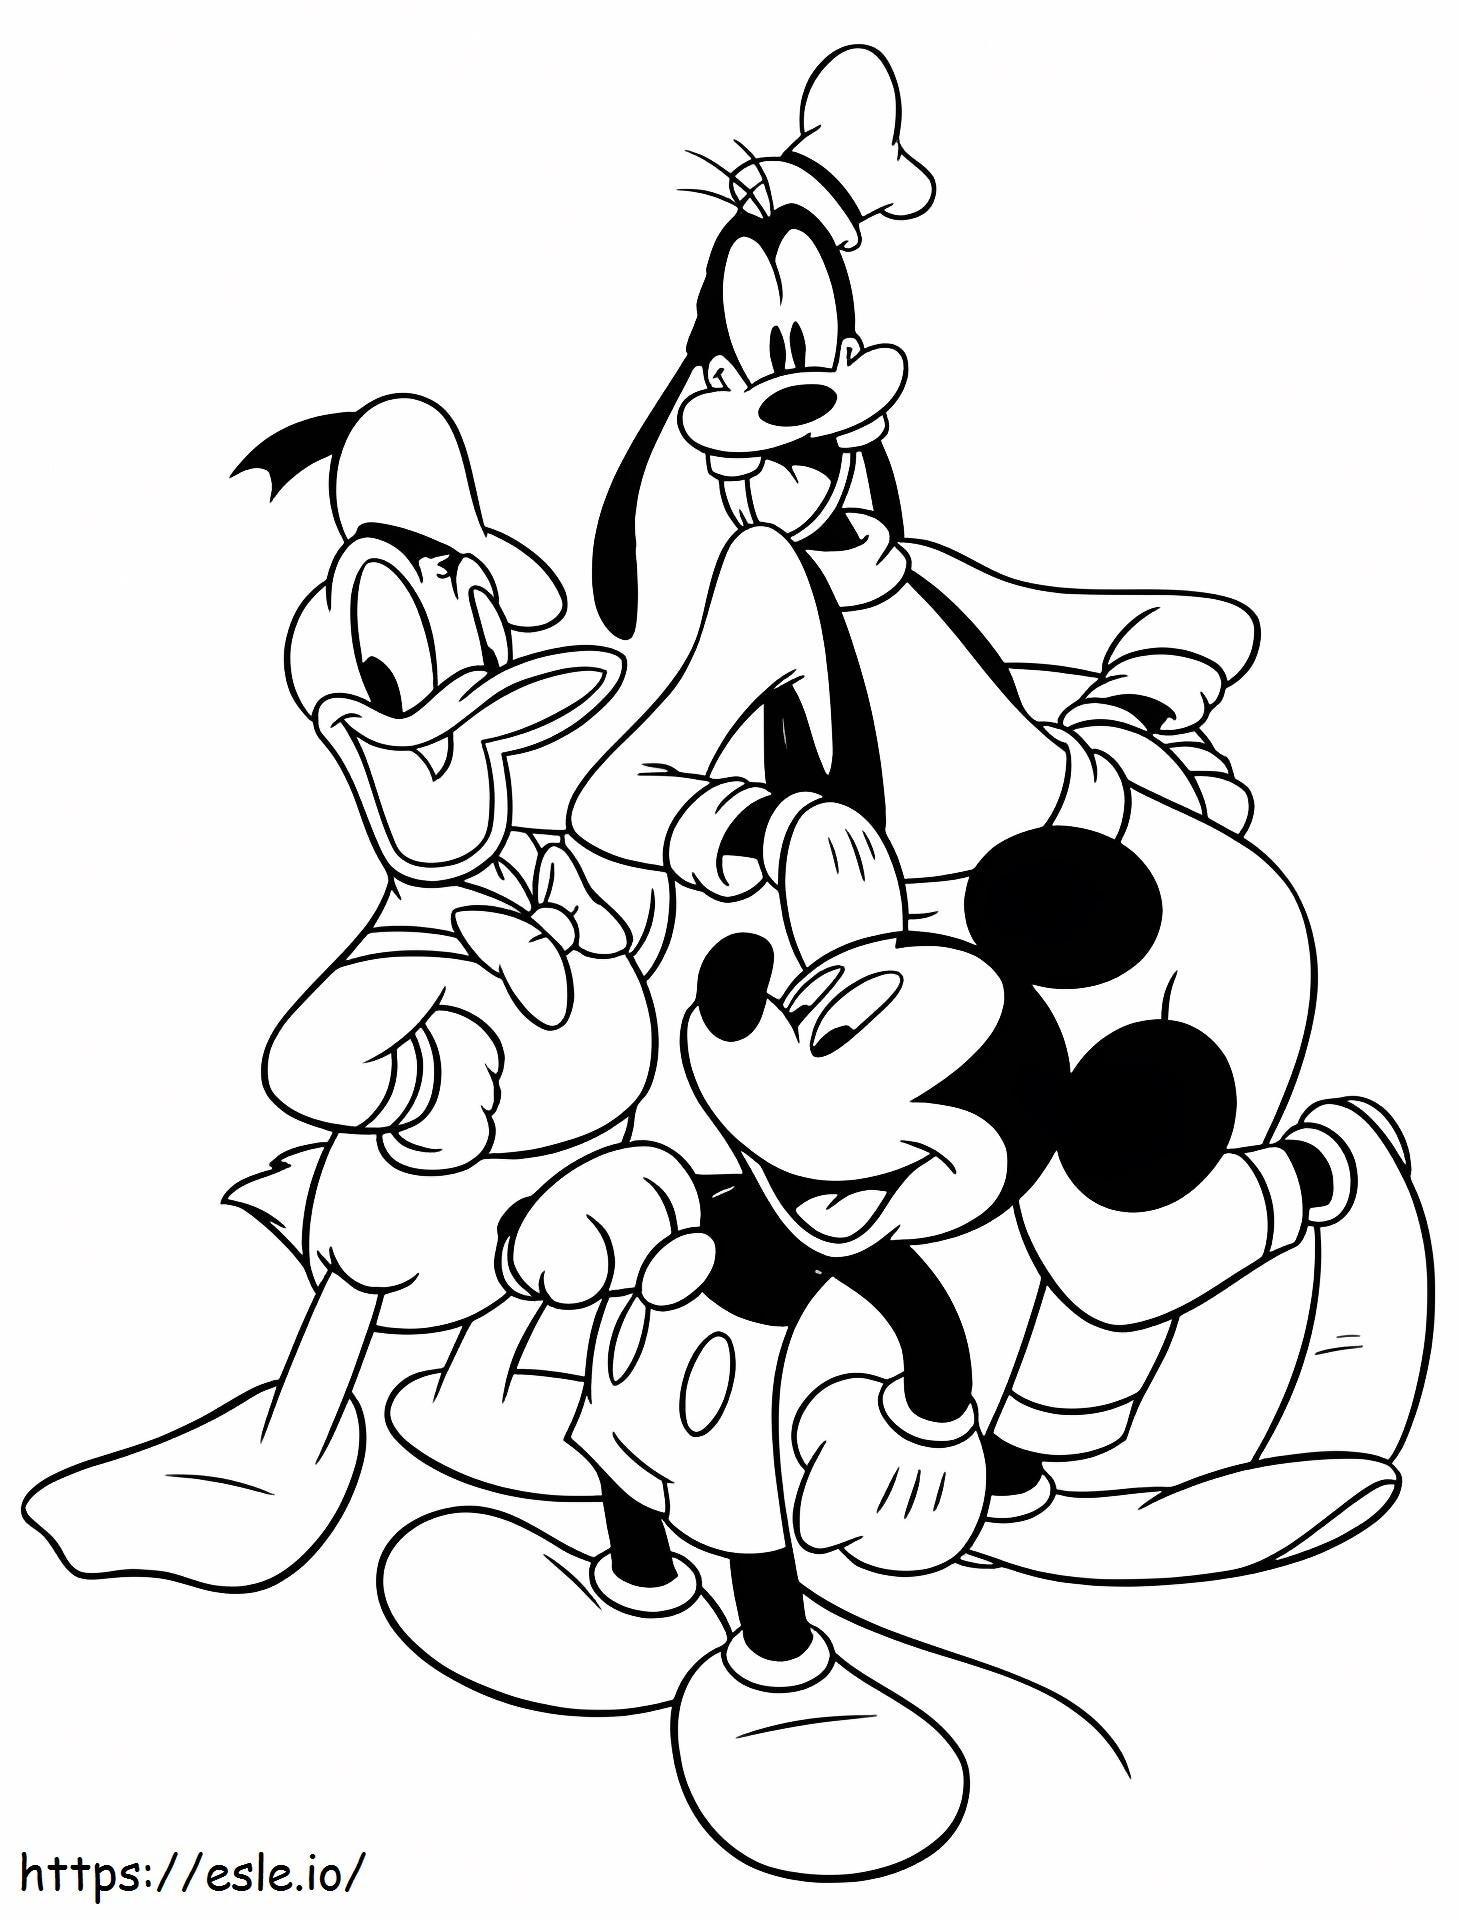 Gambar Mickey Goofy dan Donald Gambar Mewarnai